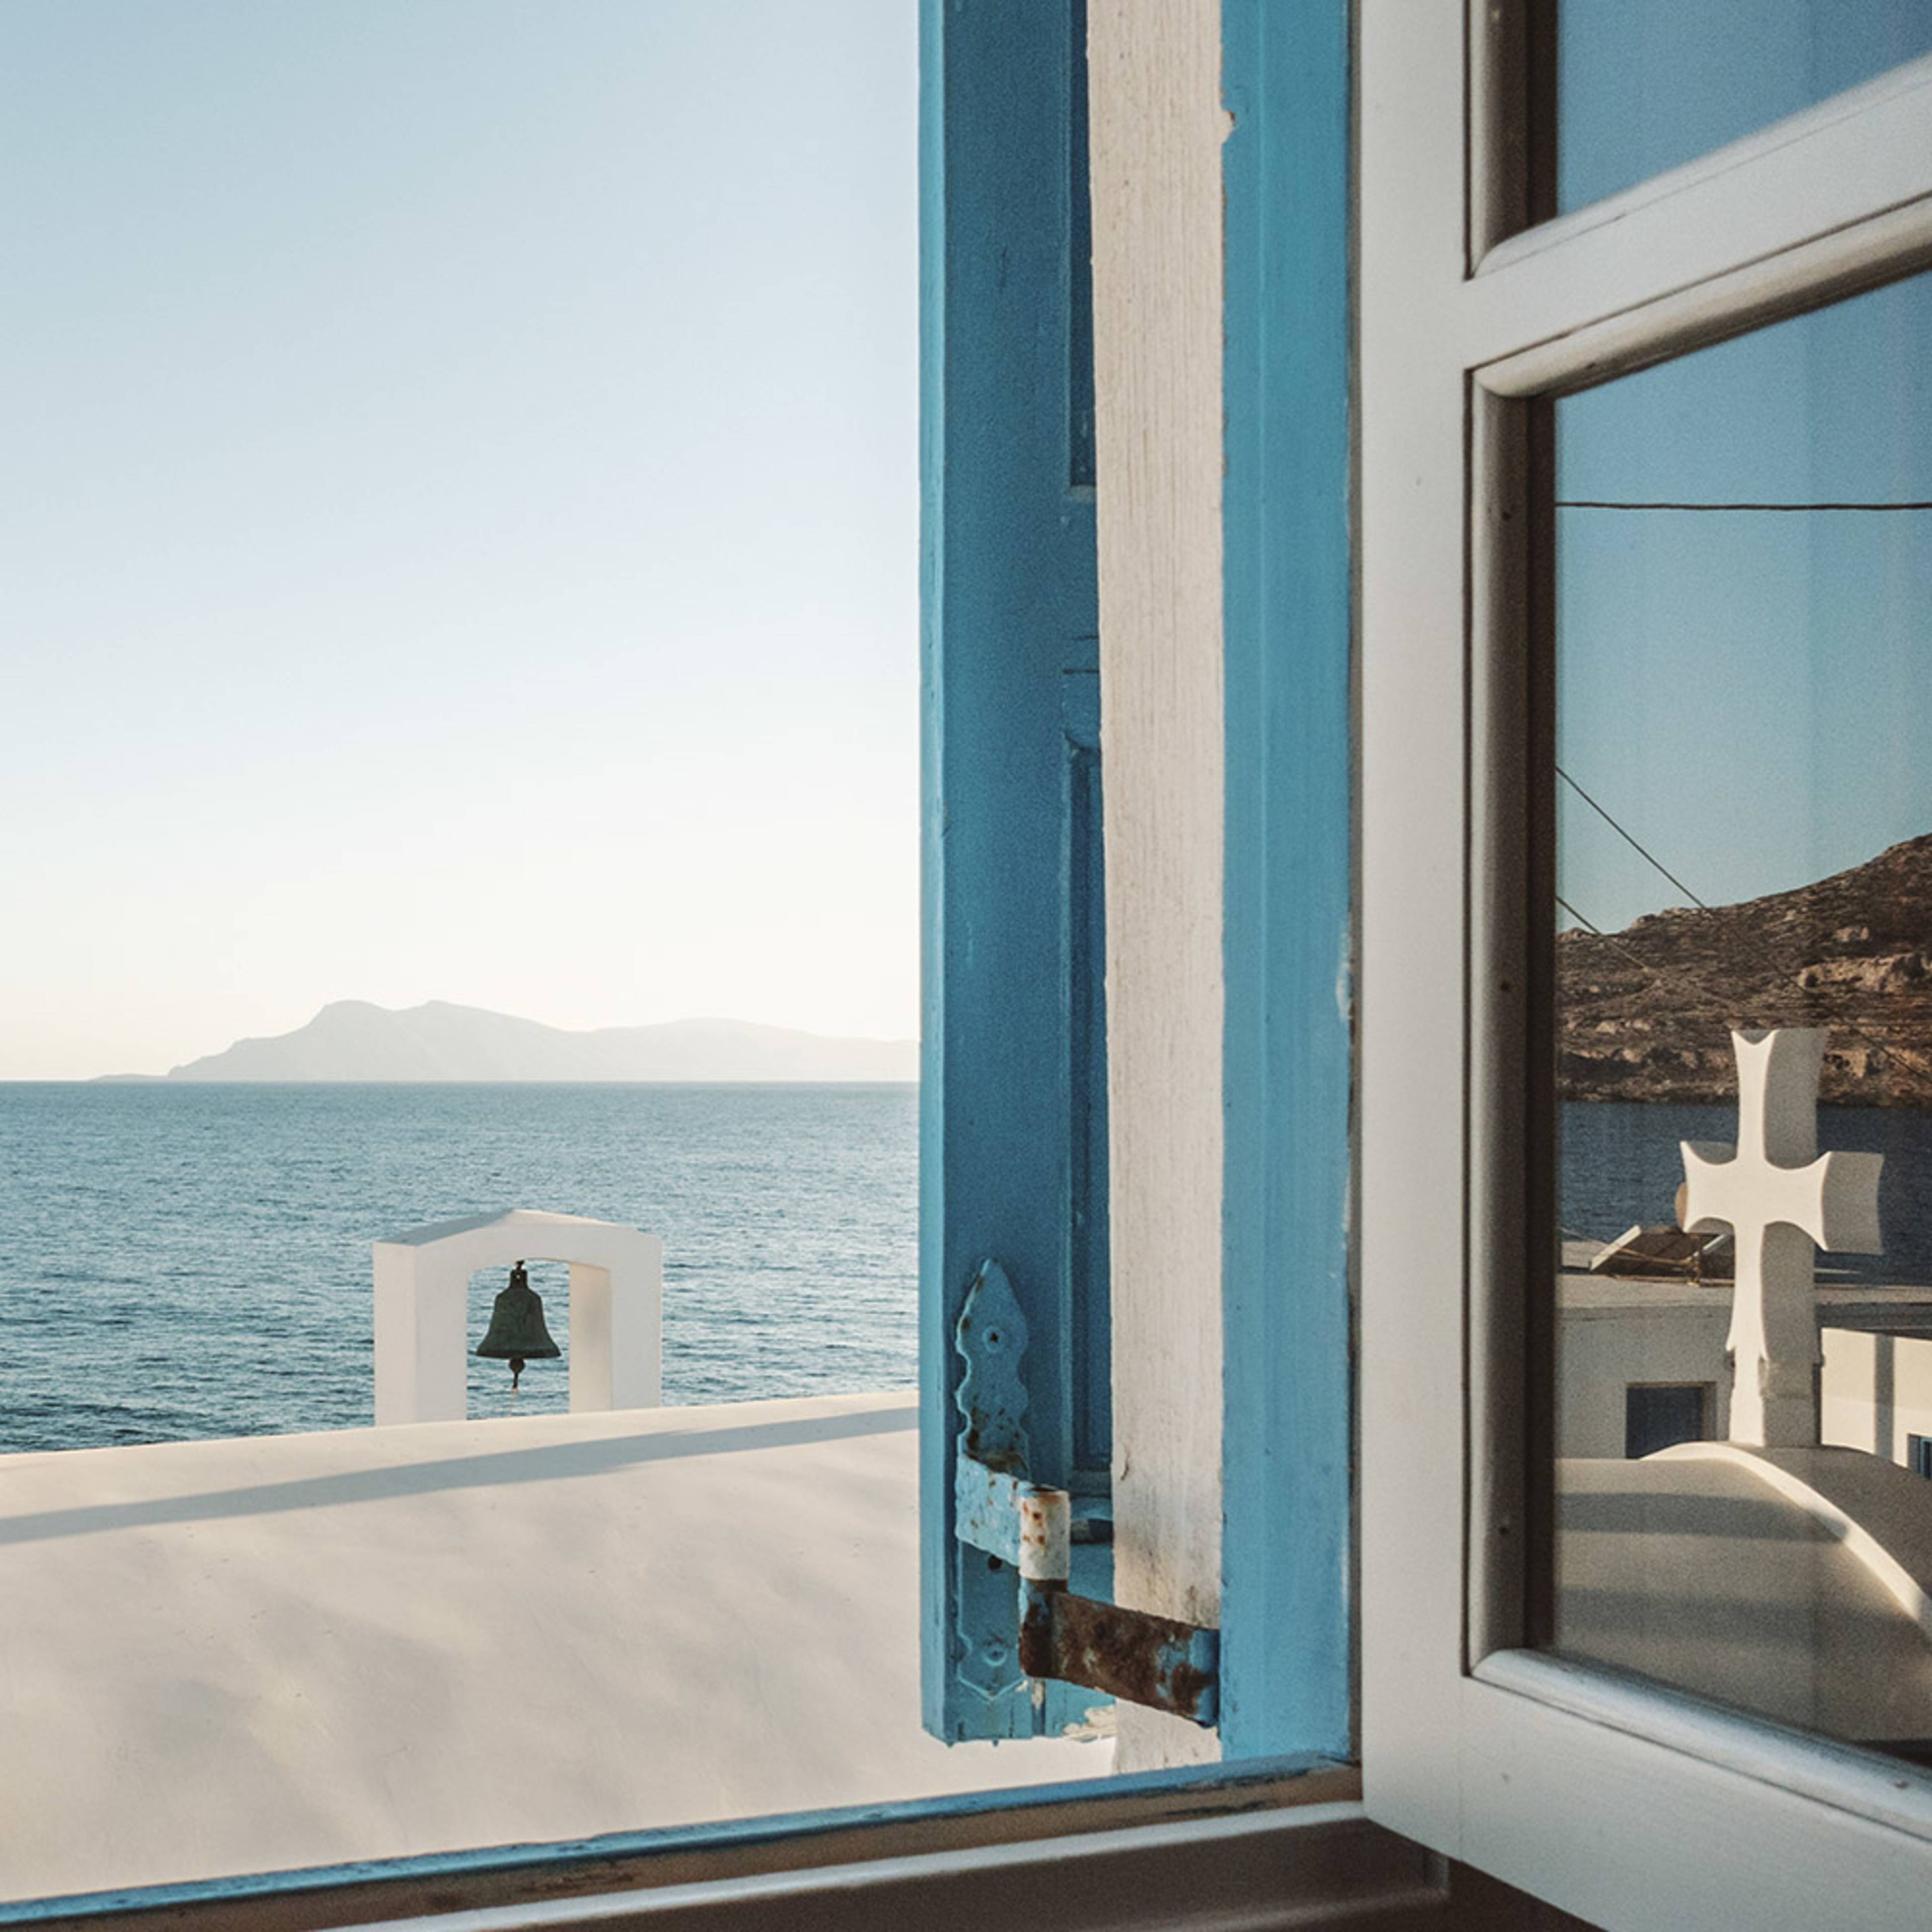 Erfahren Sie alles über unsere maßgeschneiderten 10-tägigen Rundreisen durch Griechenland